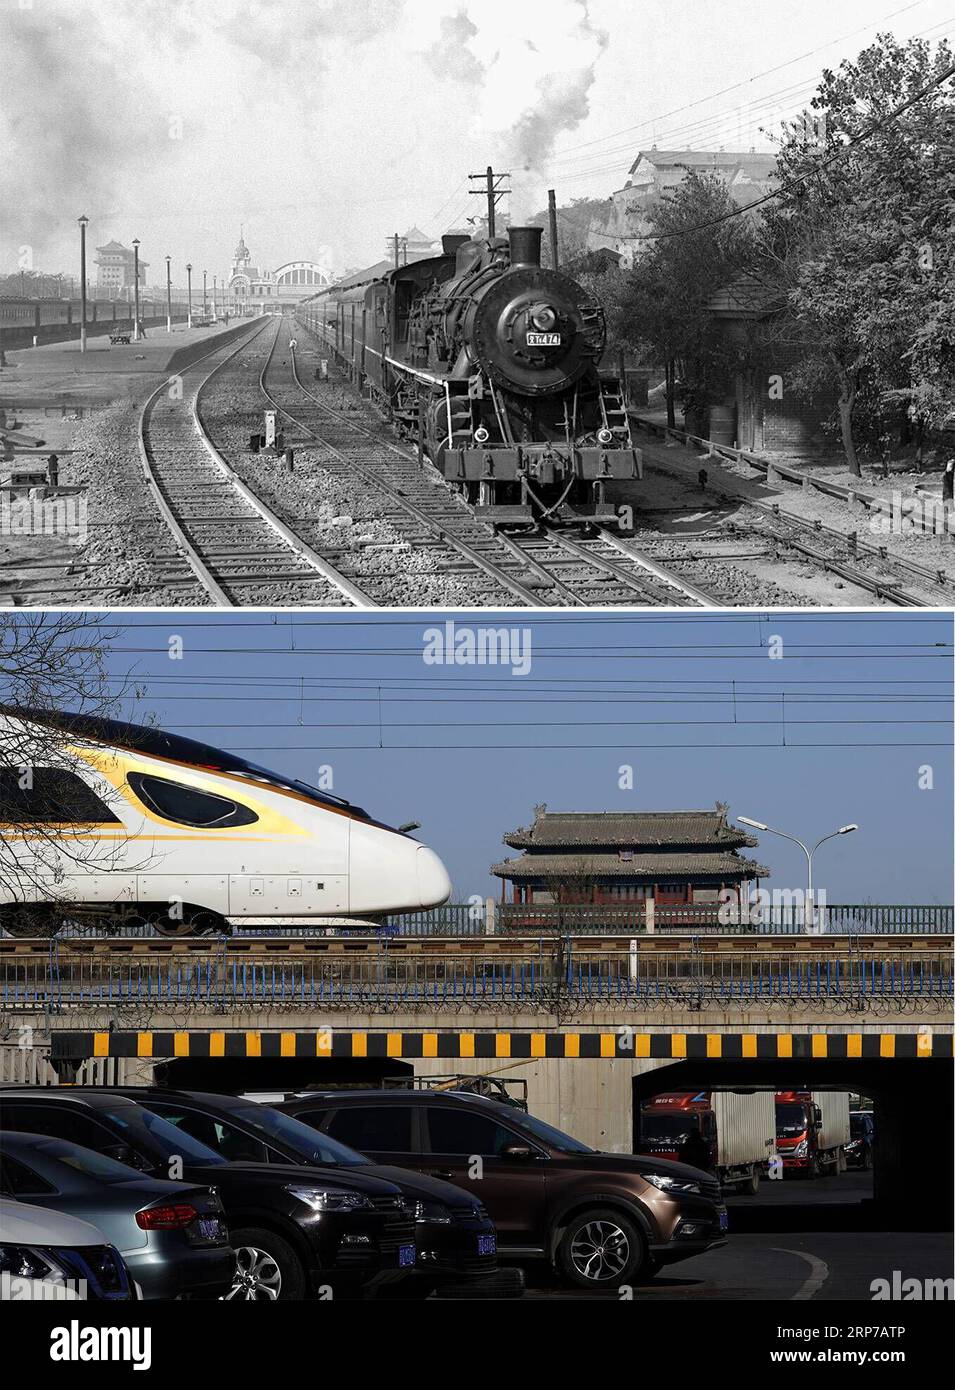 (190202) -- PECHINO, 2 febbraio 2019 () -- questa foto combinata mostra il primo treno diretto Pechino-Guangzhou in partenza dalla stazione ferroviaria di Pechino il 14 ottobre 1957 (in alto, foto scattata da Meng Qingbiao); e un treno proiettile Fuxing che passa per la torre del cancello di Yongdingmen mentre viaggia sulla ferrovia interurbana Pechino-Tianjin, 25 gennaio 2019 (in basso, foto scattata da Xing Guangli). La Cina sta vivendo i suoi 40 giorni speciali annuali o la corsa ai viaggi del Festival di Primavera, che è soprannominata come la più grande migrazione del pianeta, con 2,99 miliardi di viaggi da effettuare durante il periodo di 40 giorni di quest'anno. Durante questo periodo, centinaia di o. Foto Stock